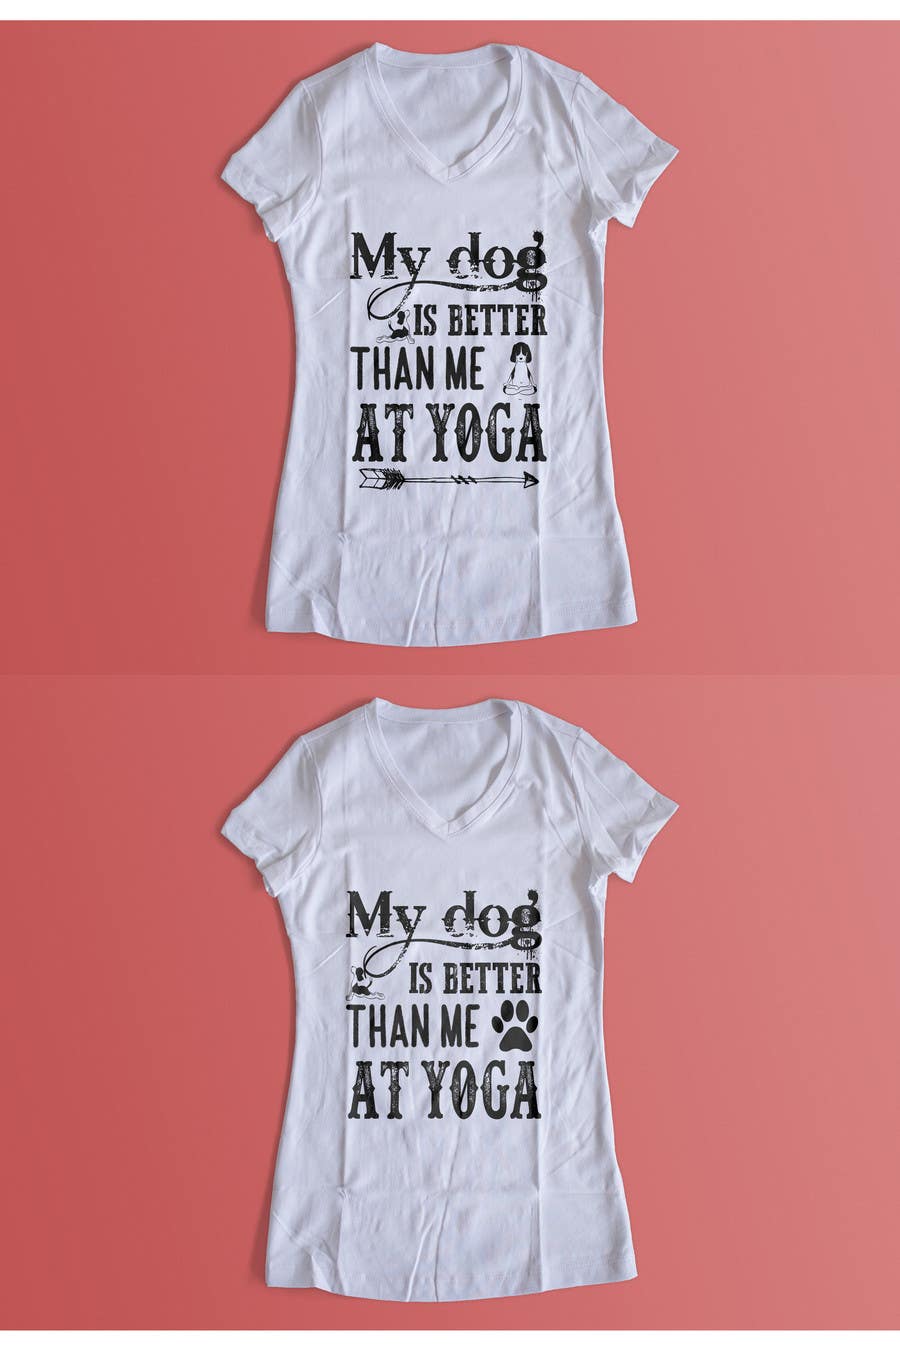 Příspěvek č. 50 do soutěže                                                 women and dog T-shirt contest for Vintage and Americana/Classic themed design
                                            